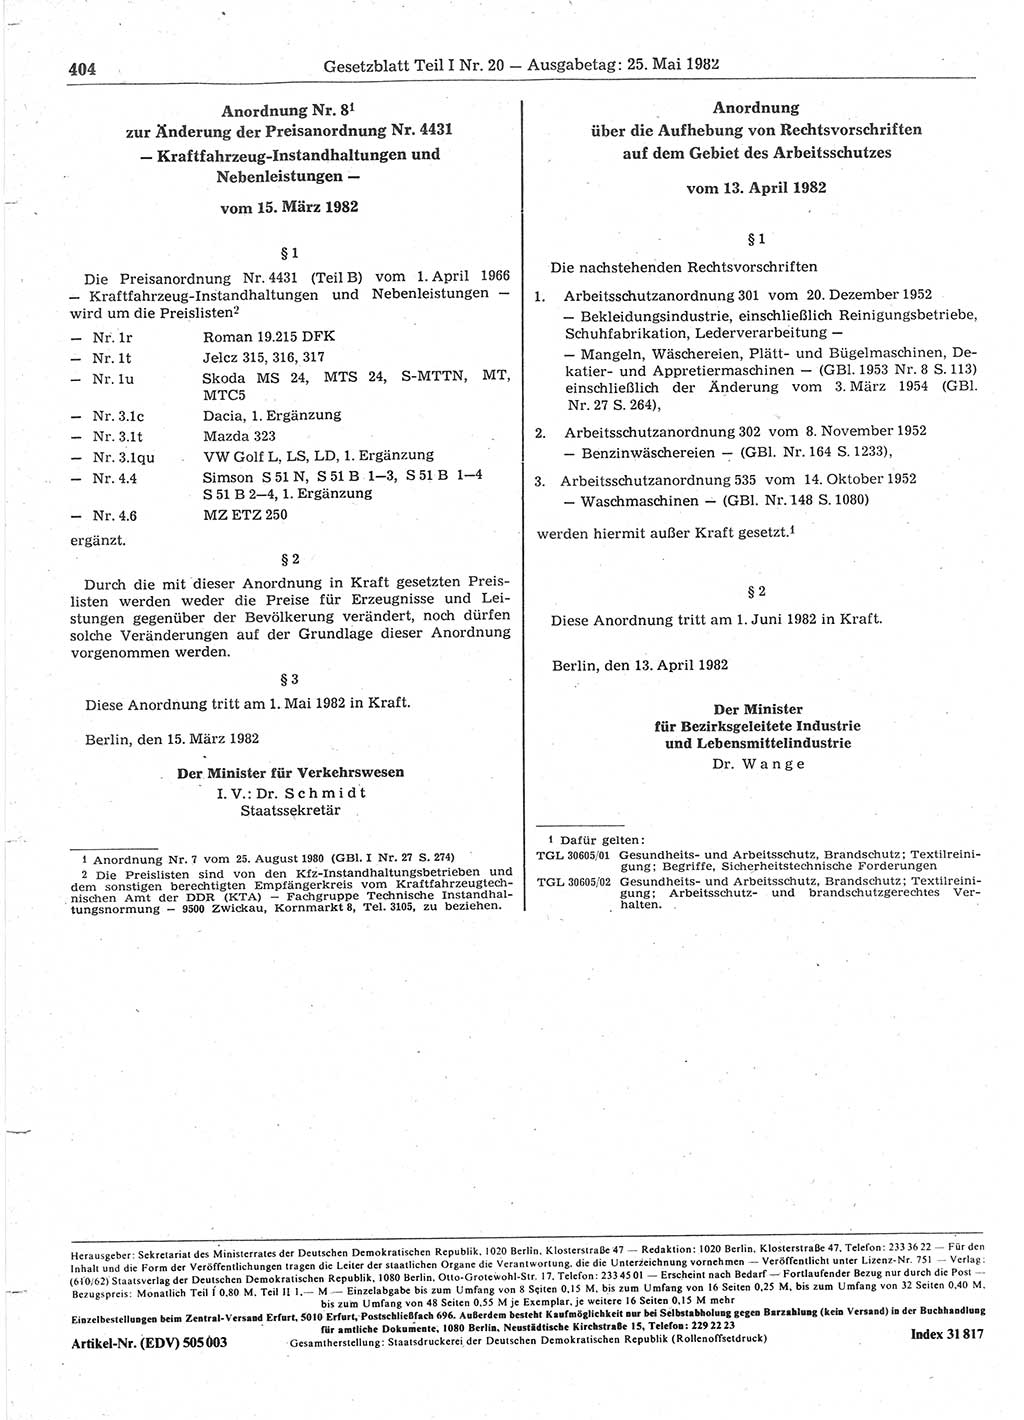 Gesetzblatt (GBl.) der Deutschen Demokratischen Republik (DDR) Teil Ⅰ 1982, Seite 404 (GBl. DDR Ⅰ 1982, S. 404)